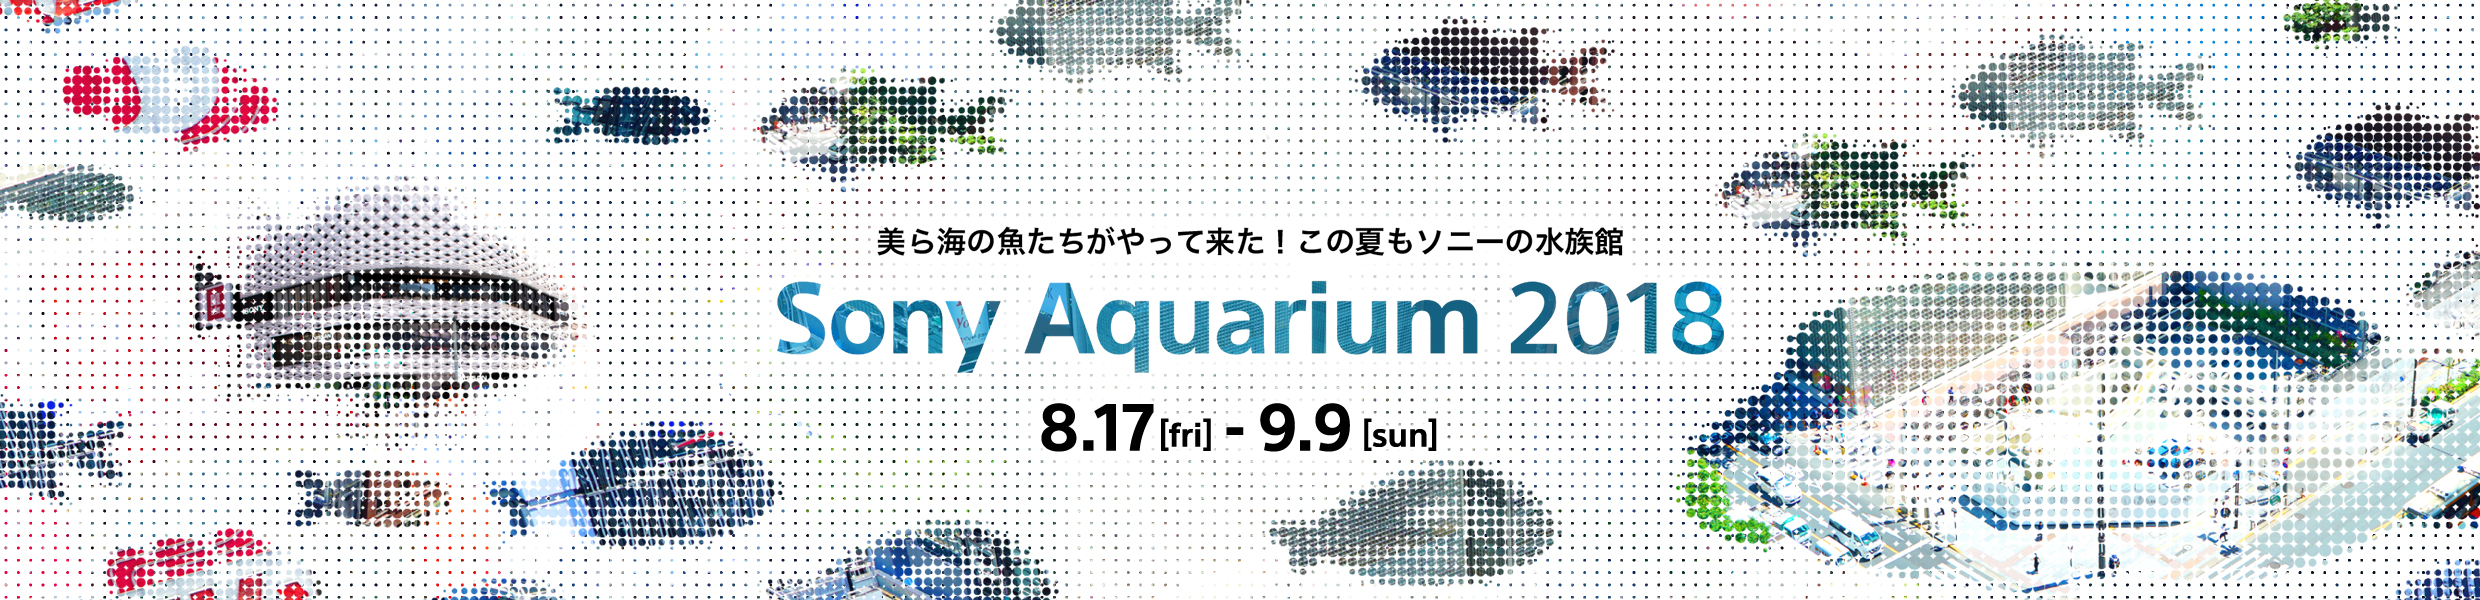 美ら海の魚たちがたってきた！この夏もソニーの水族館 Sony Aquarium 2018 8.17[fri] - 9.9[sun]